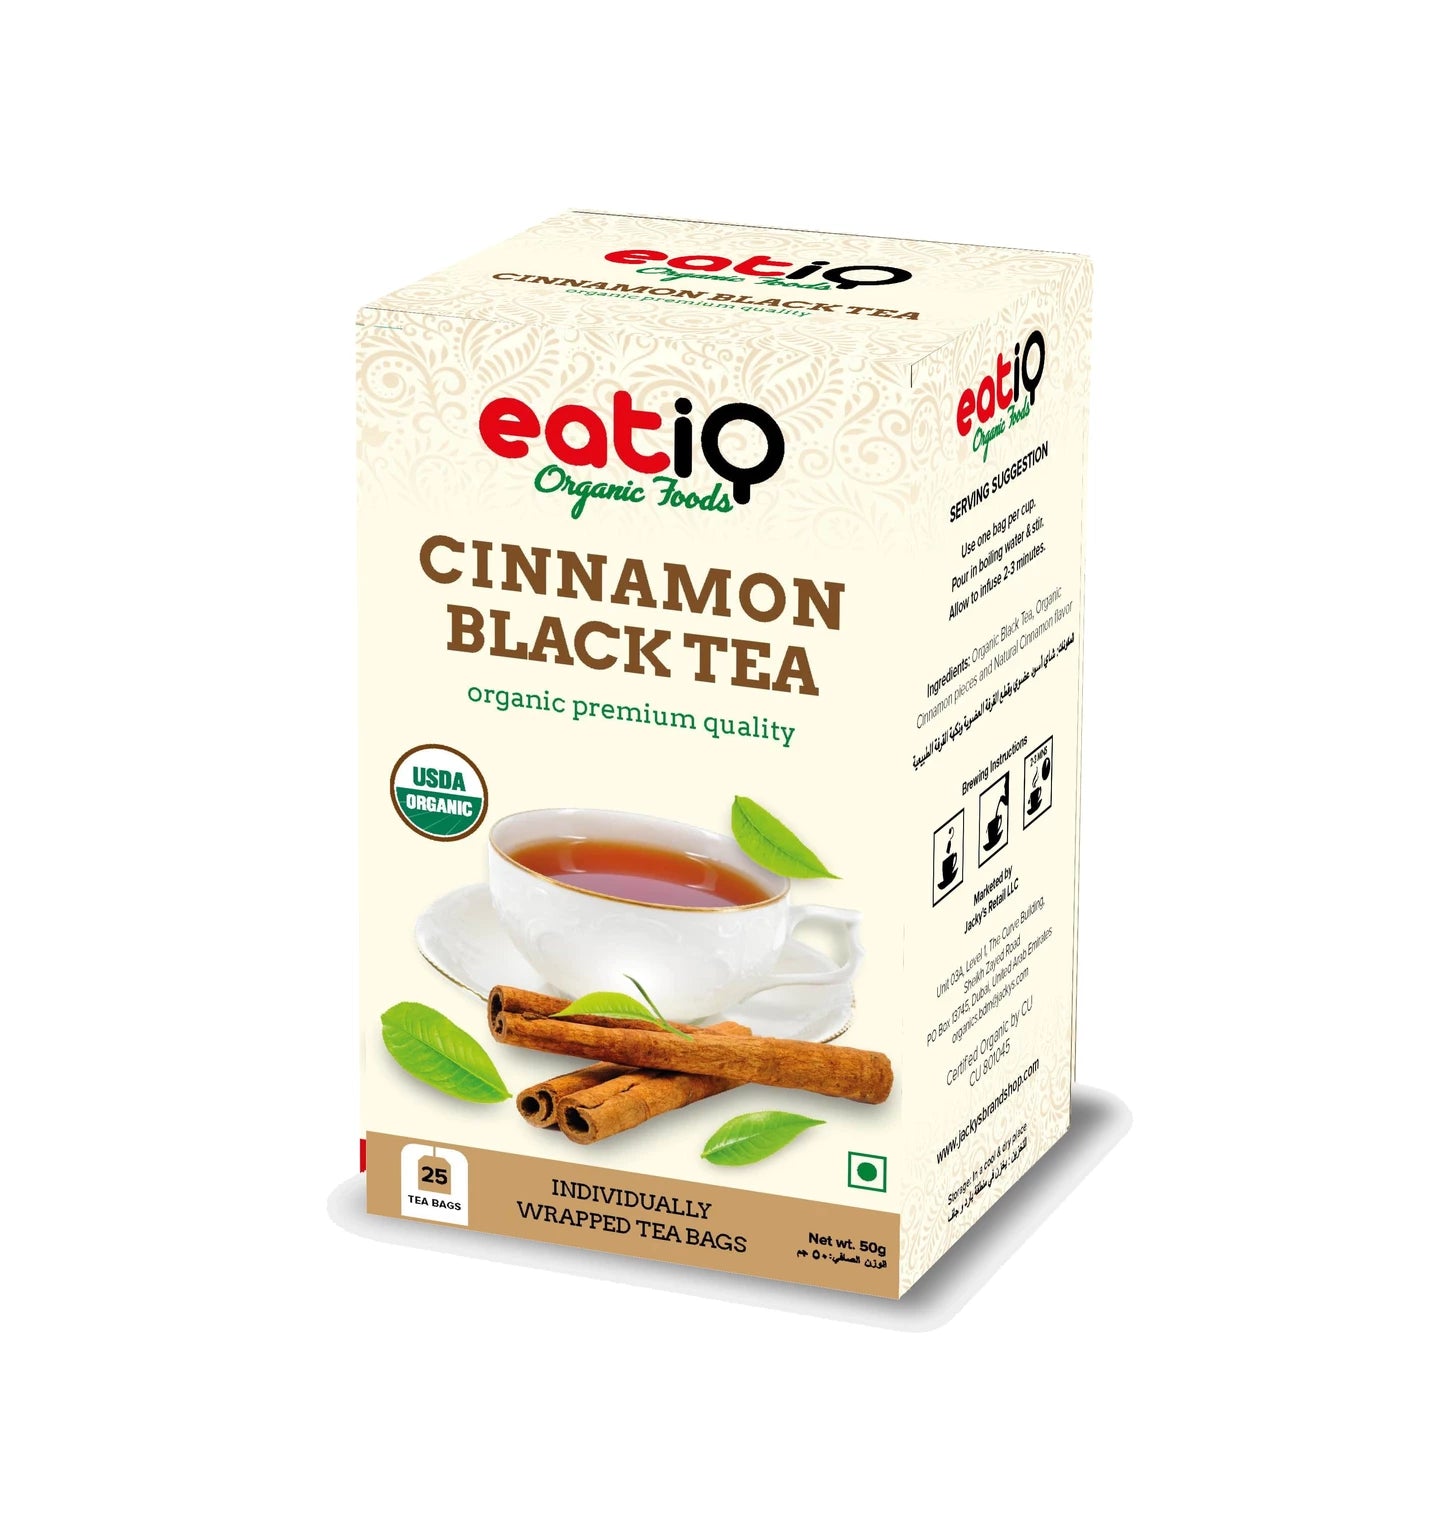 EATIQ ORGANIC FOODS Cinnamon Black Tea, 50g